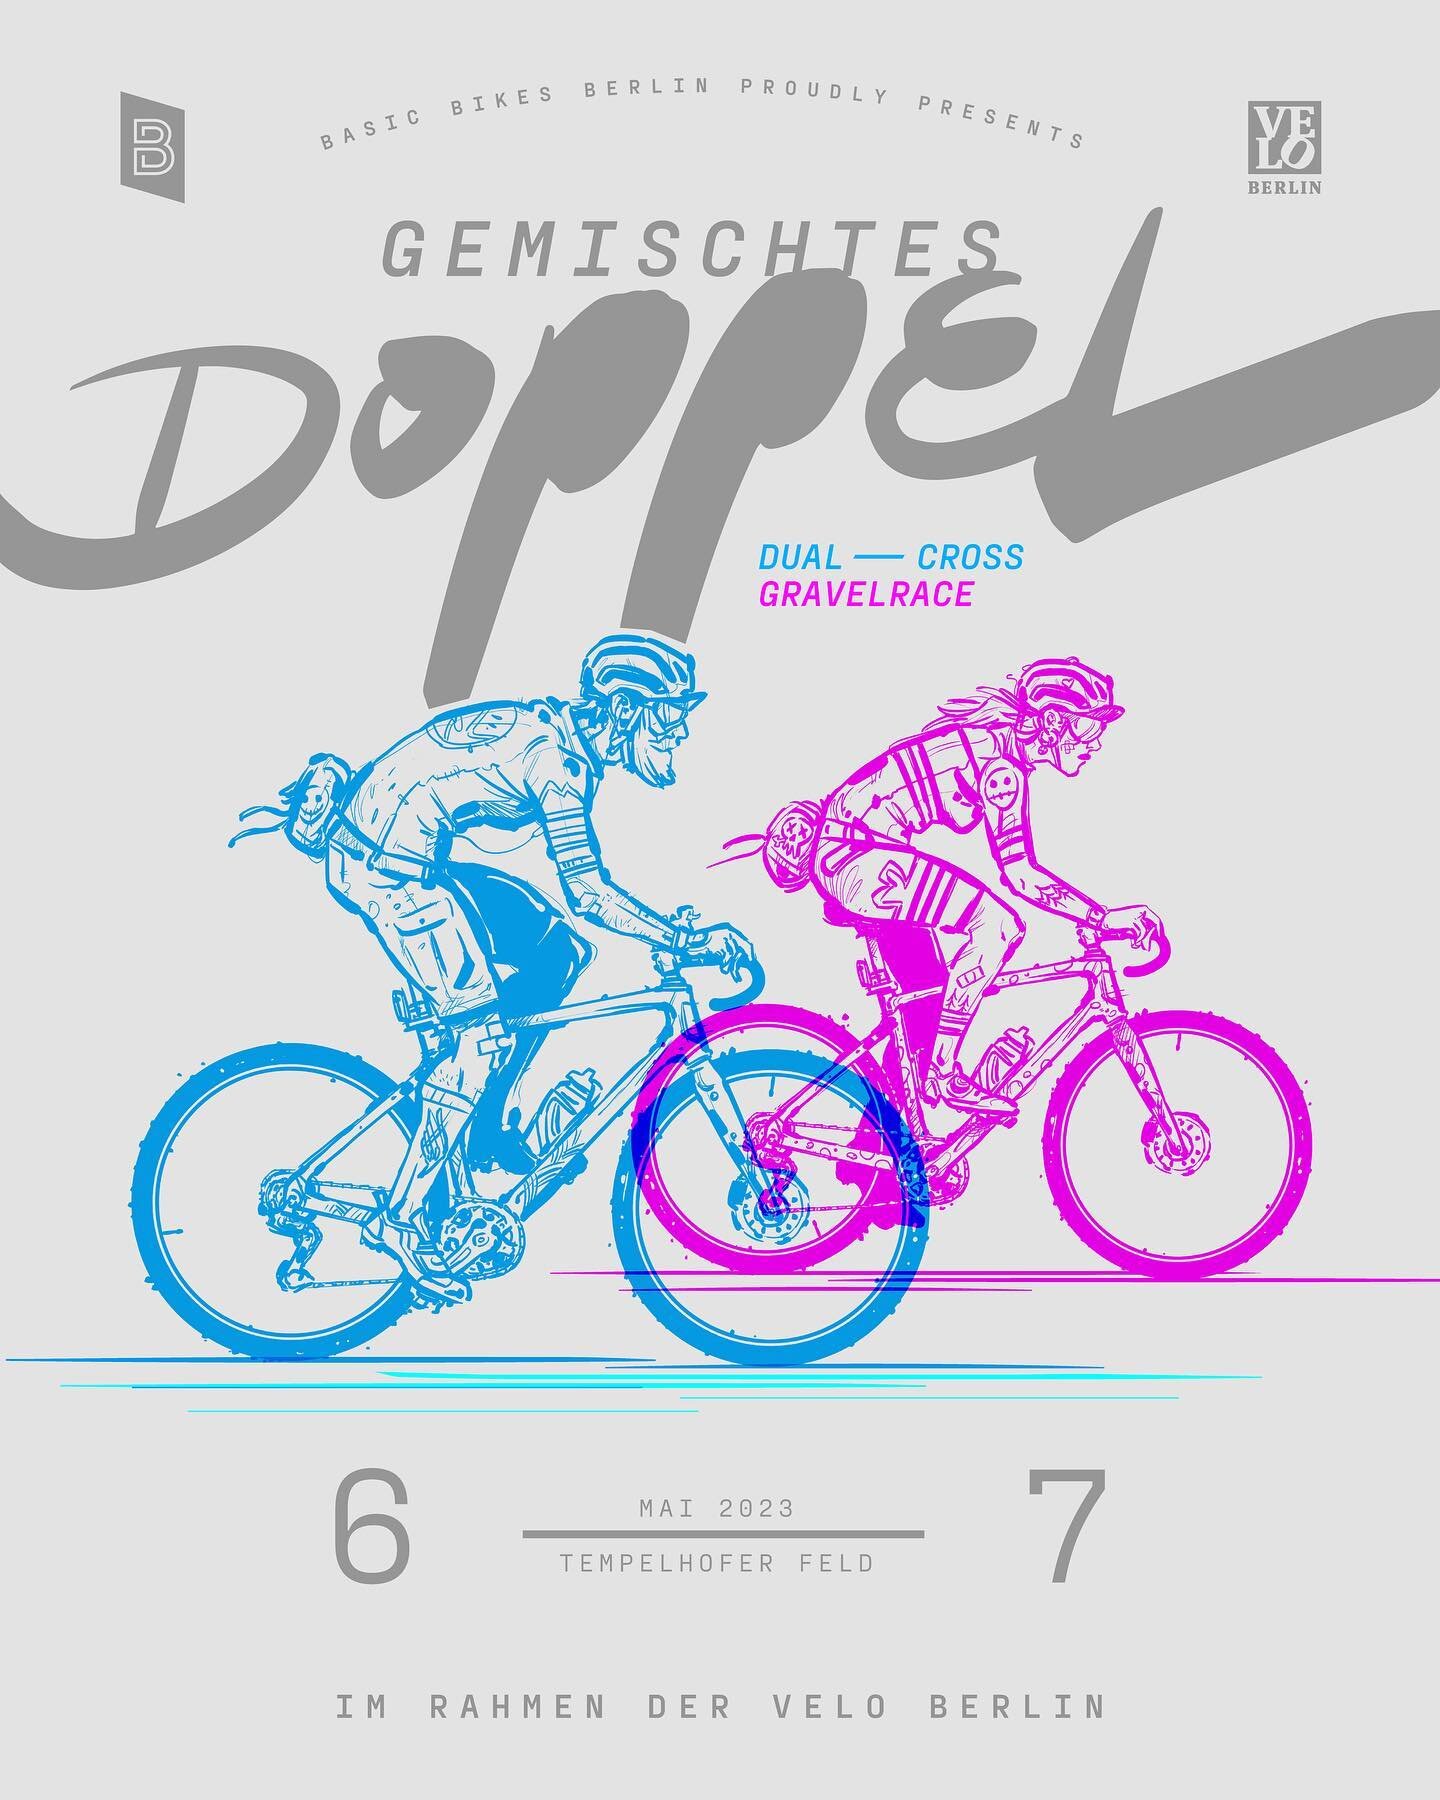 BASIC Bikes und die VELO Berlin veranstalten vom 6. &ndash; 7. Mai, auf einen eigens daf&uuml;r angelegten Gravelparcours, ein spannendes Dual&ndash;Cross GravelRace: Das GEMISCHTE DOPPEL.

Es fahren jeweils zwei Fahrer:innen, auf einem symmetrischen